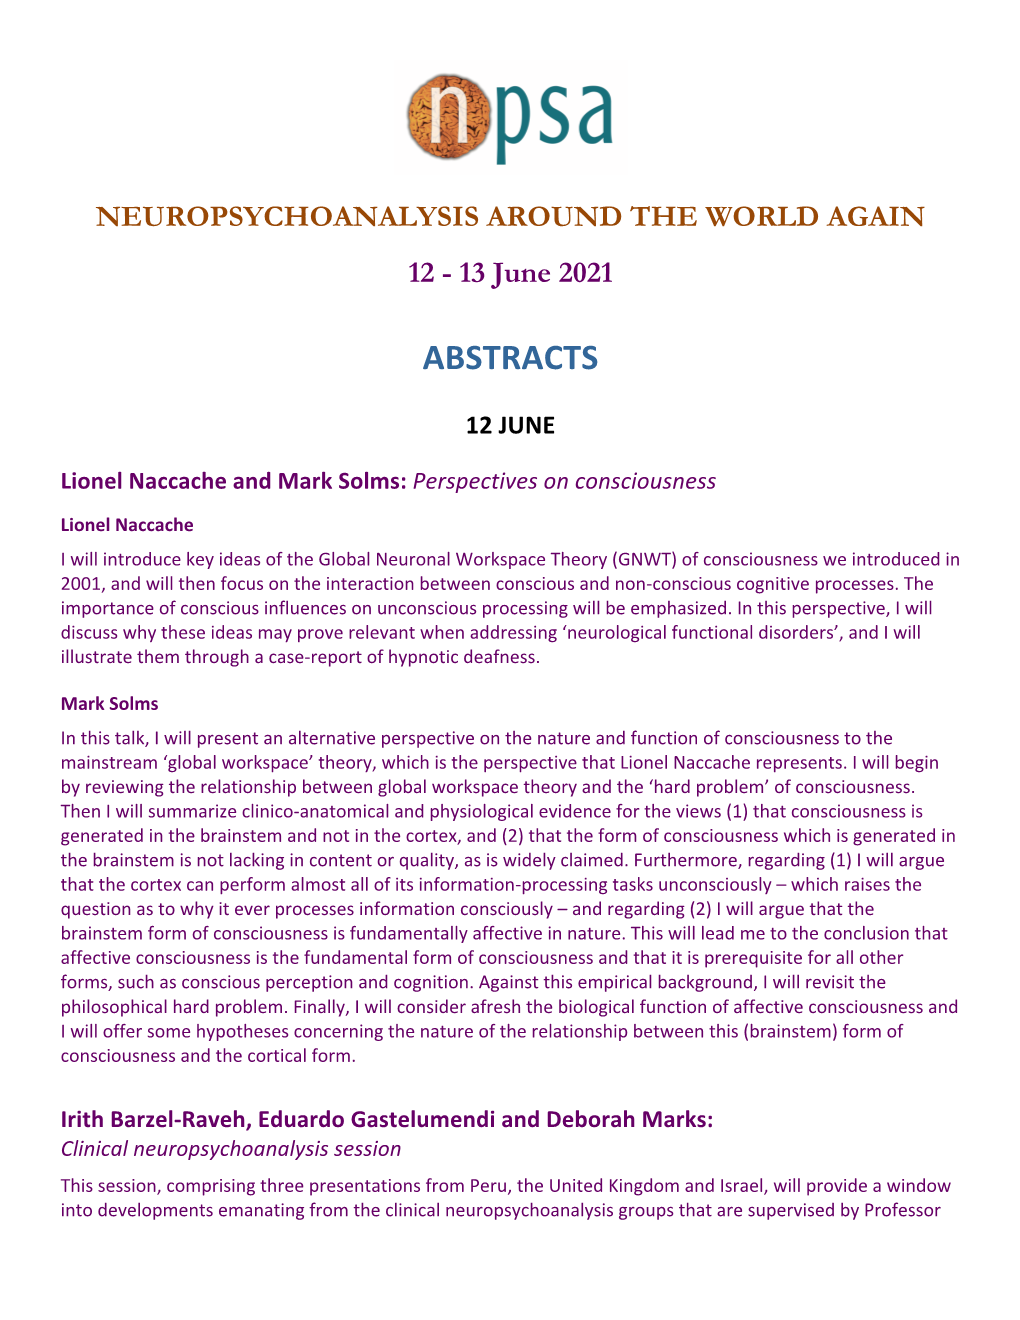 Neuropsychoanalysis Around the World Again